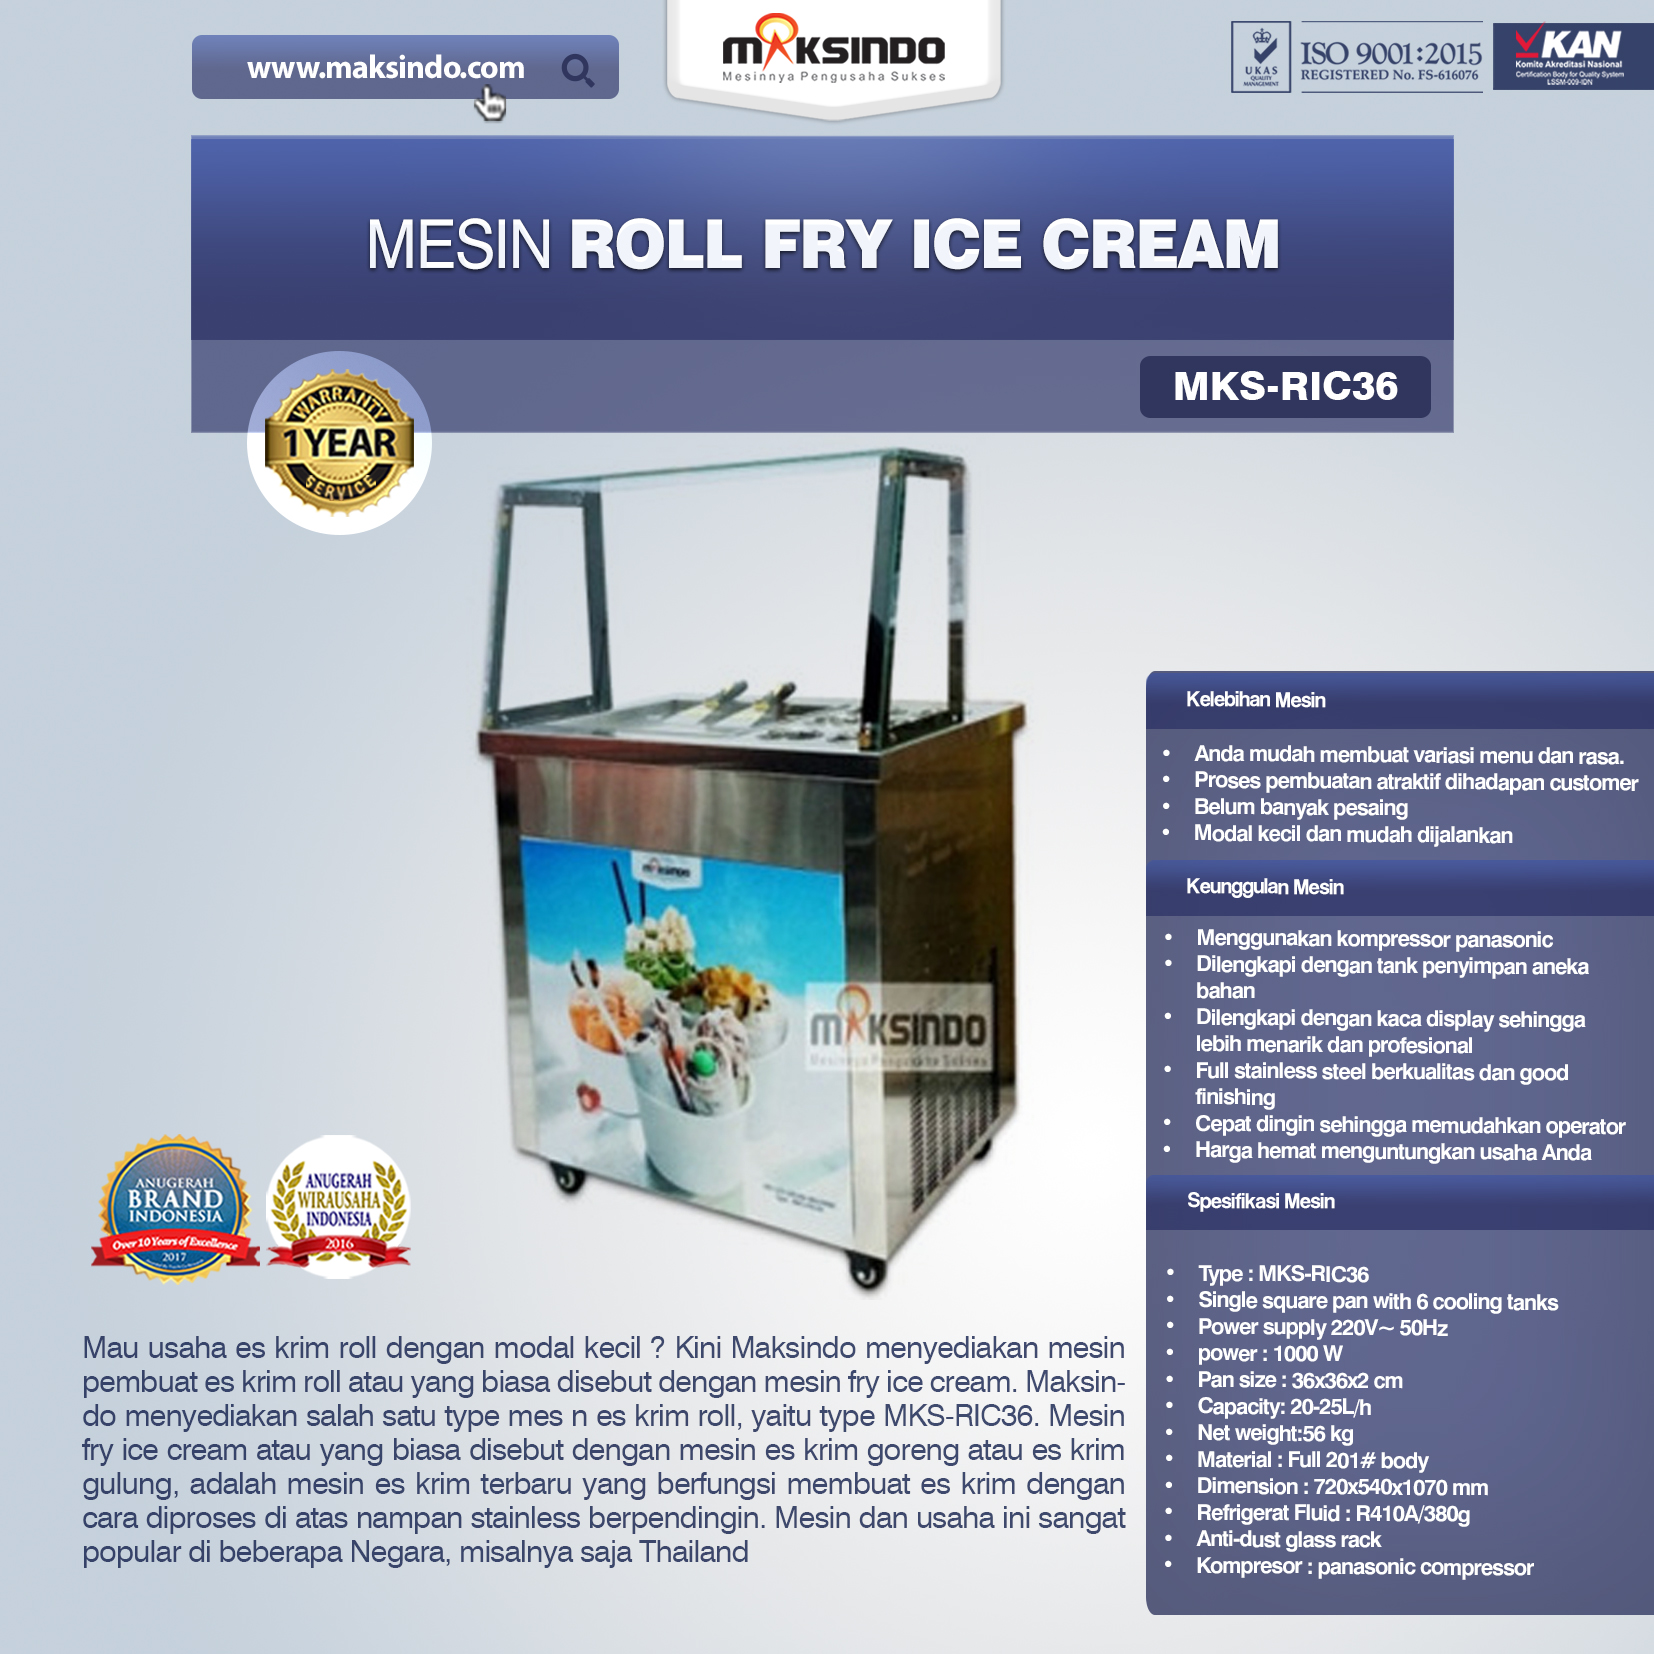 Jual Mesin Roll Fry Ice Cream (RIC36) di Banjarmasin